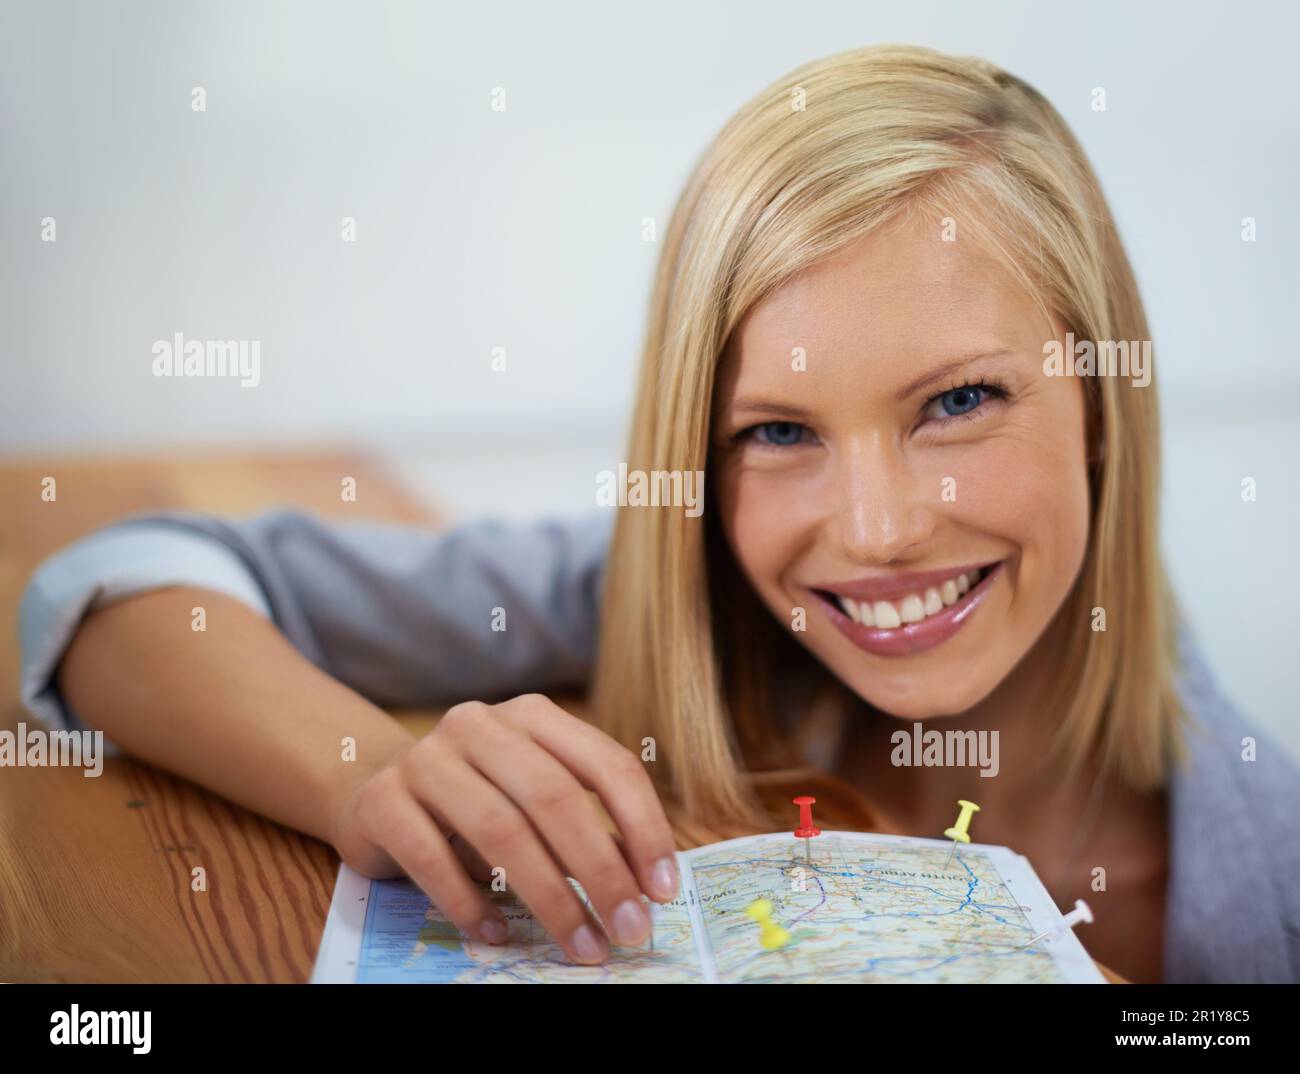 Agente di viaggio, mappa pin e ritratto di una donna felice che pianifica una destinazione turistica, una località di vacanza o un'avventura in giro per il mondo. Agenzia turistica, servizio Foto Stock